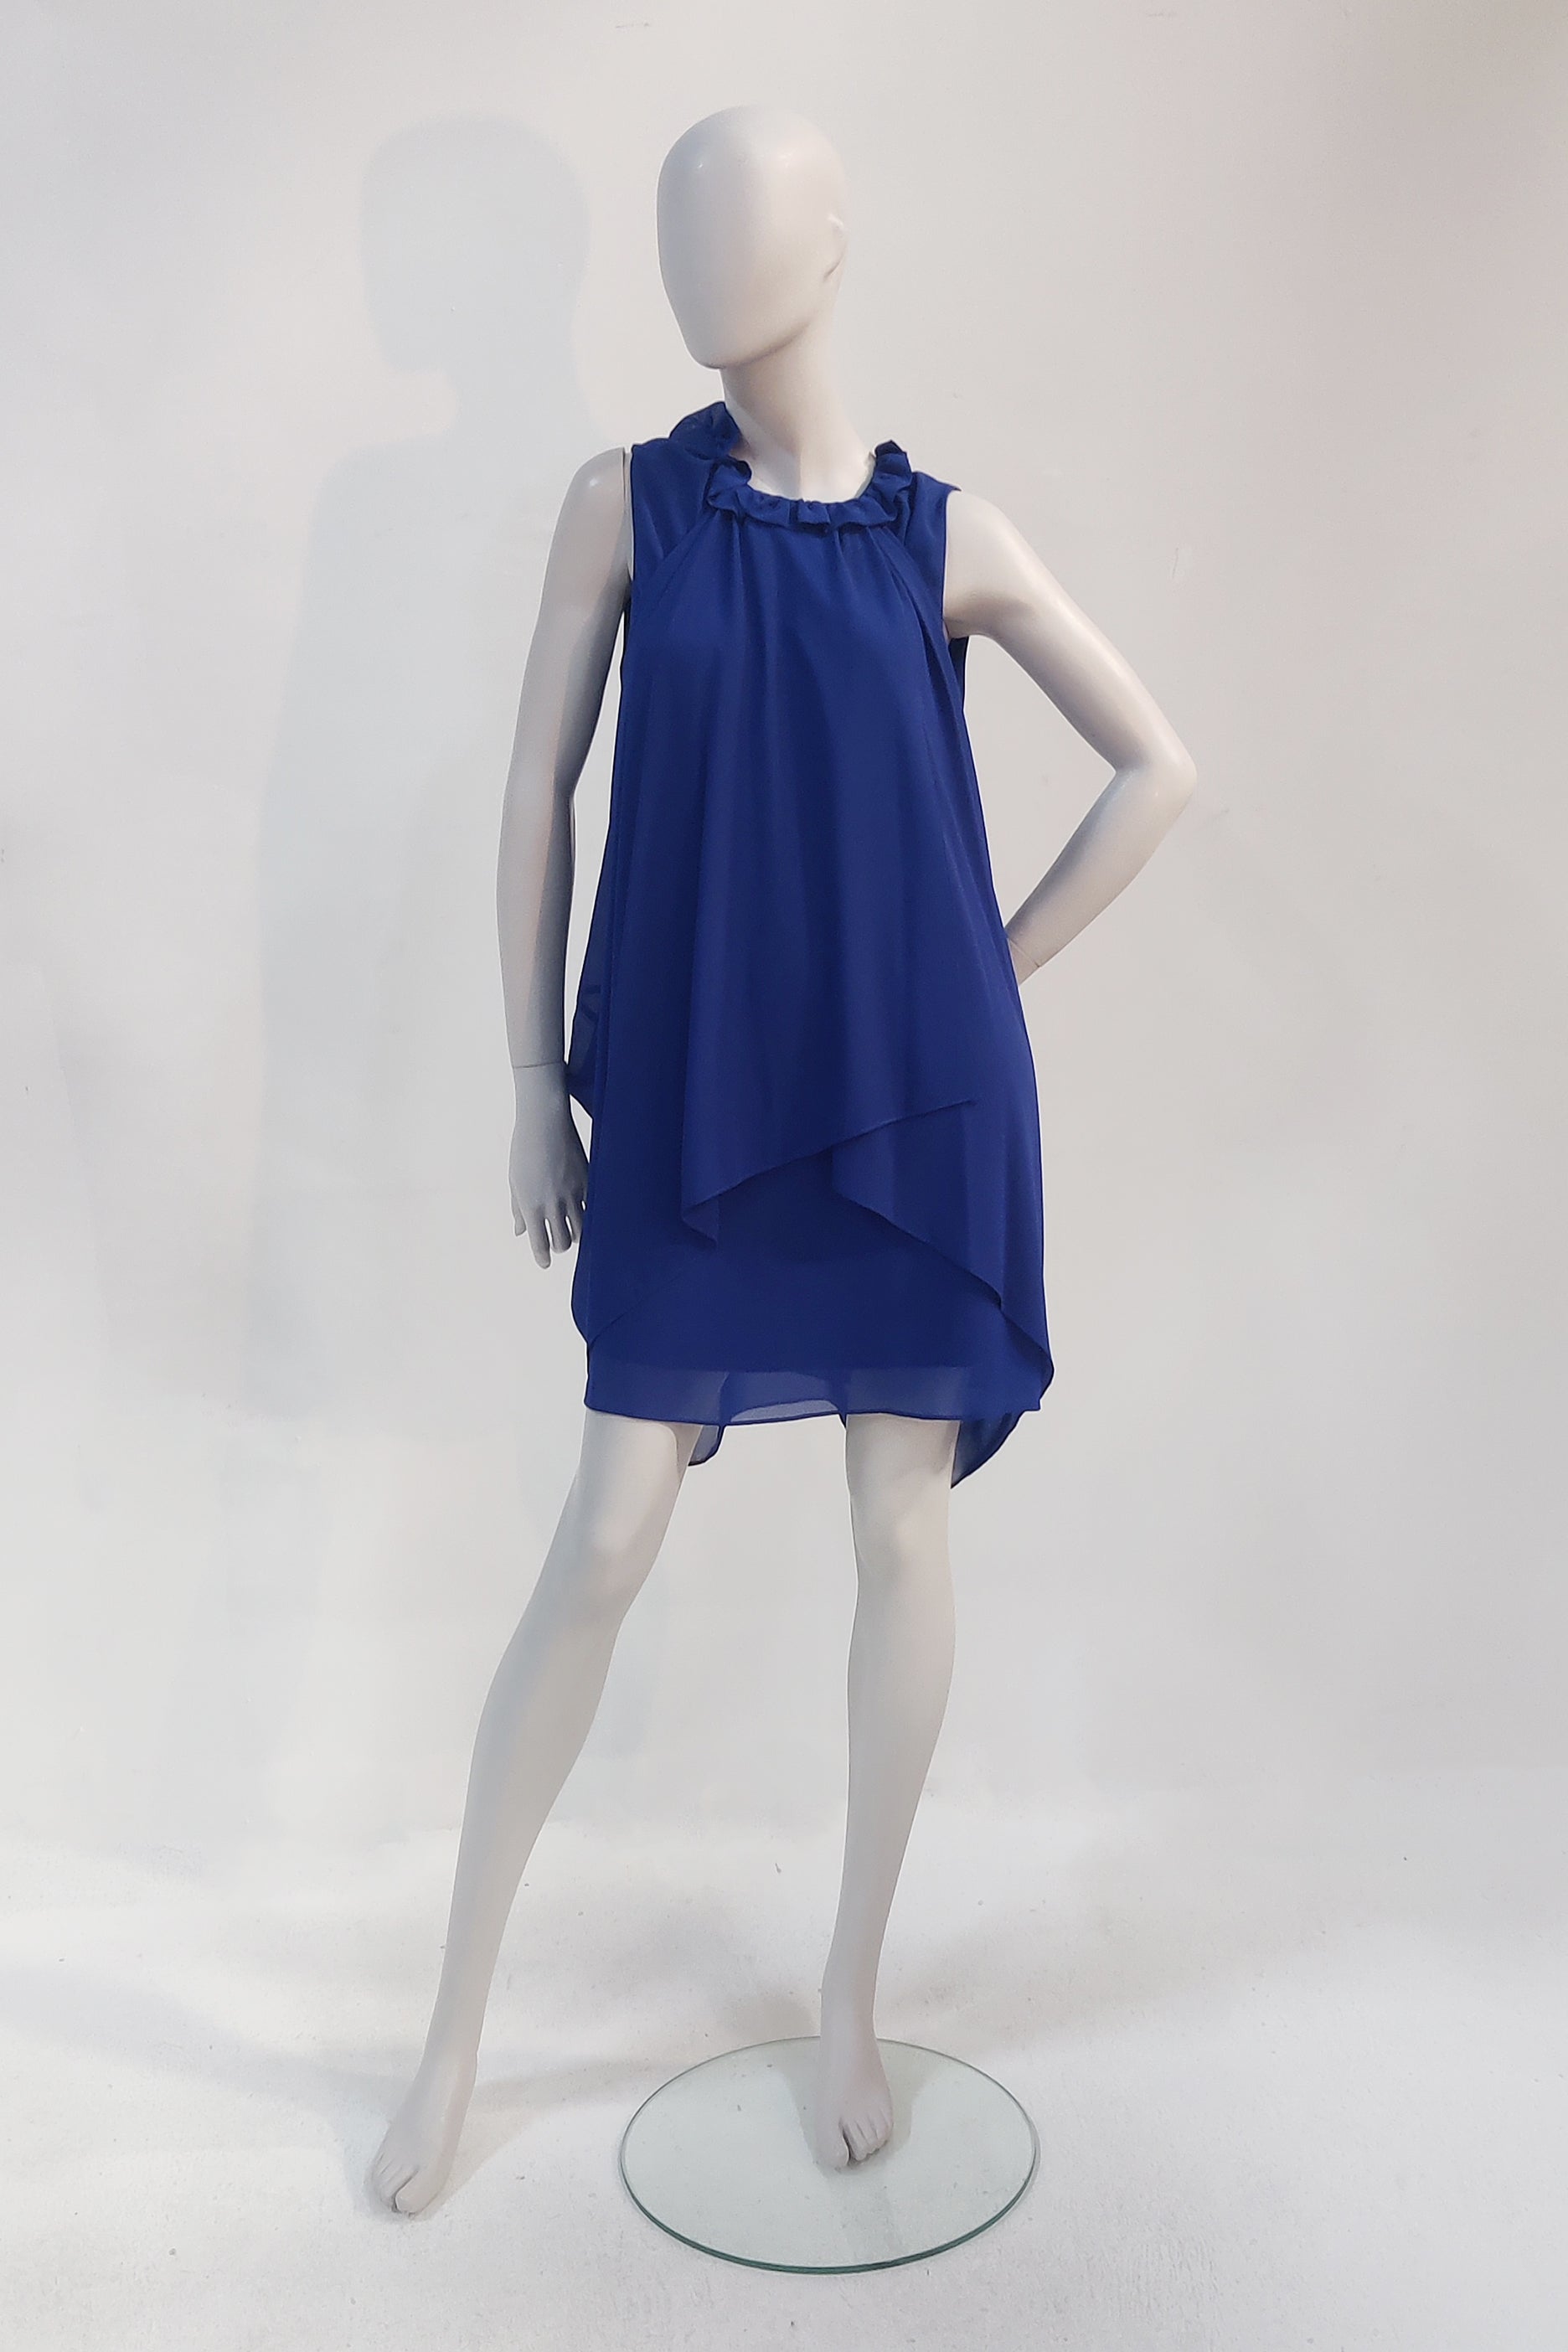 Draped Blue Dress (Eu38)